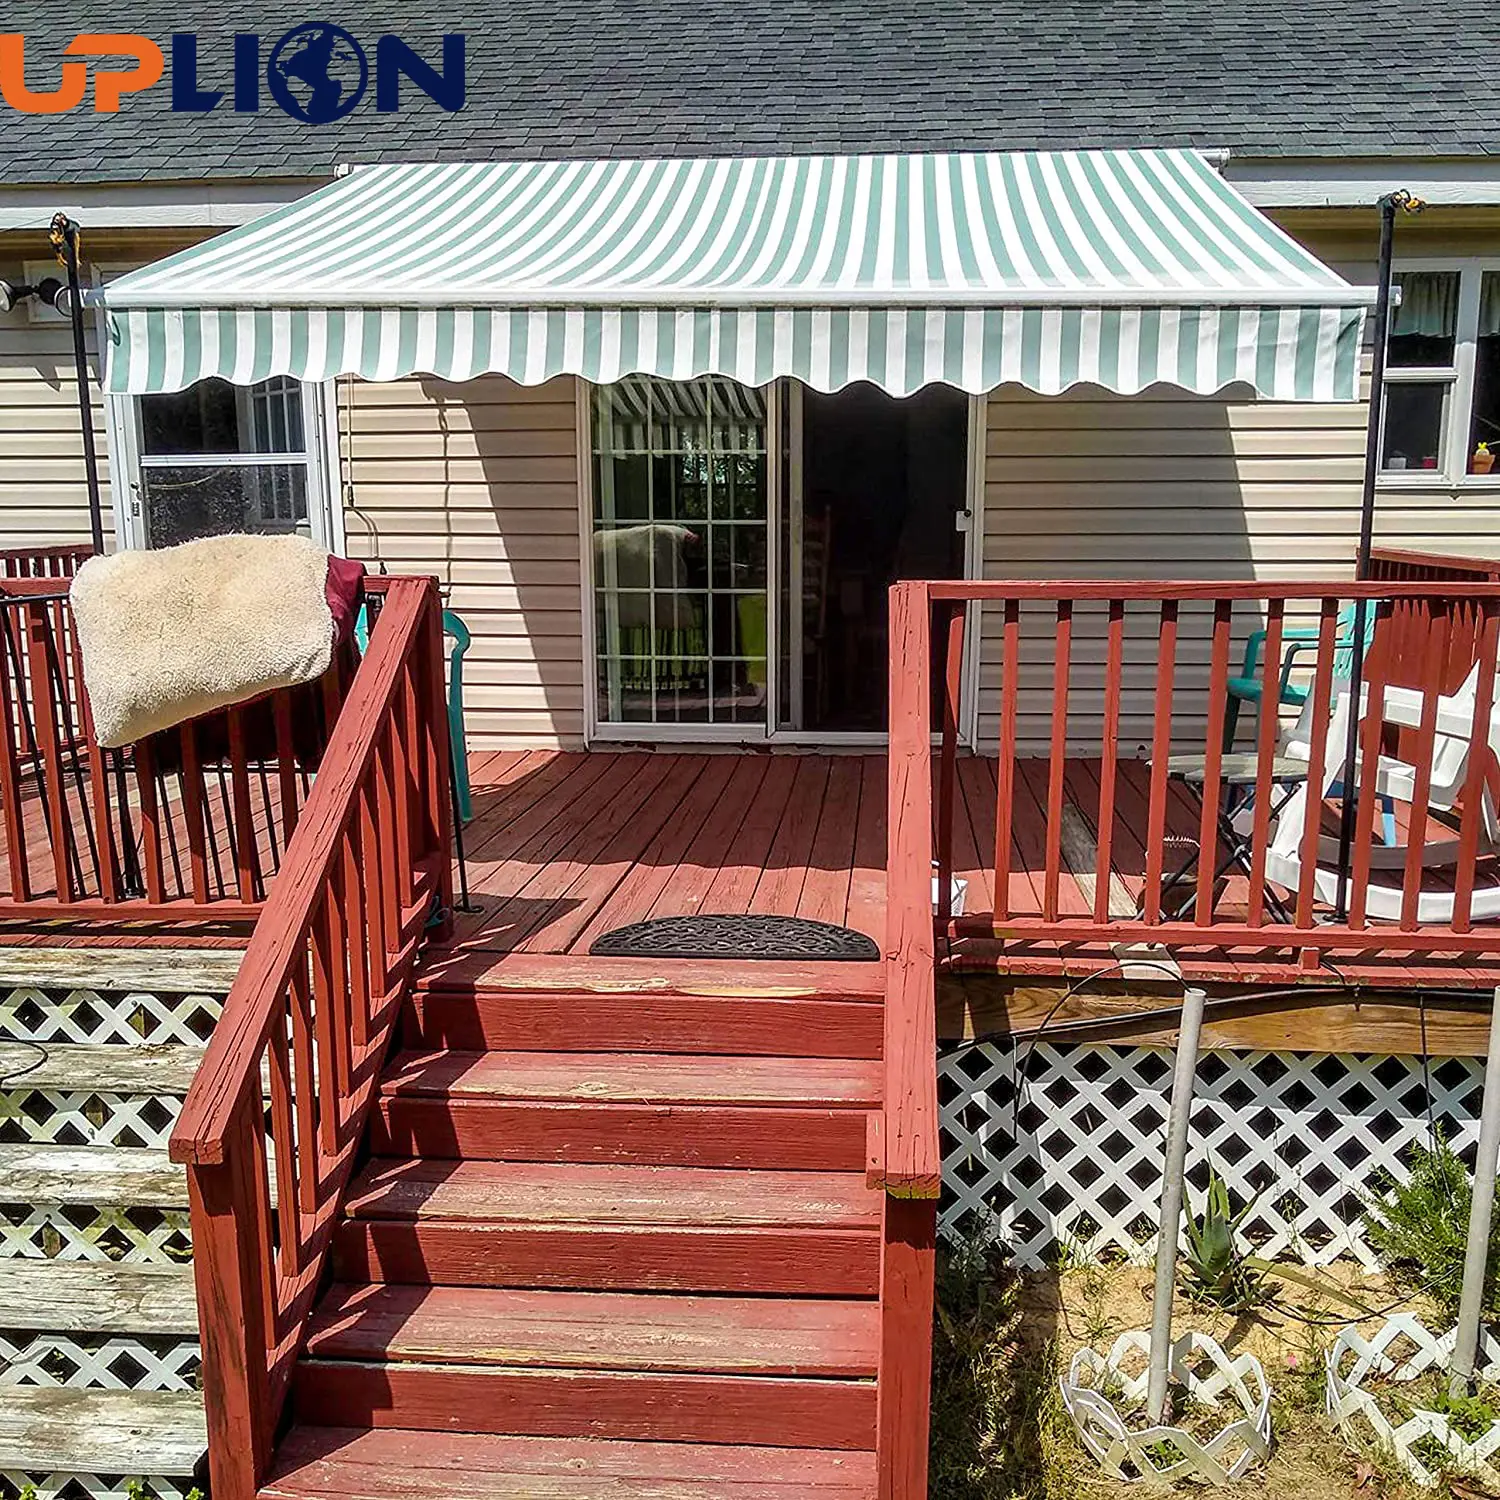 Tenda da sole per esterni Uplion tenda da sole per Patio per cortile, ponte, balcone tenda da sole pieghevole con protezione UV retrattile